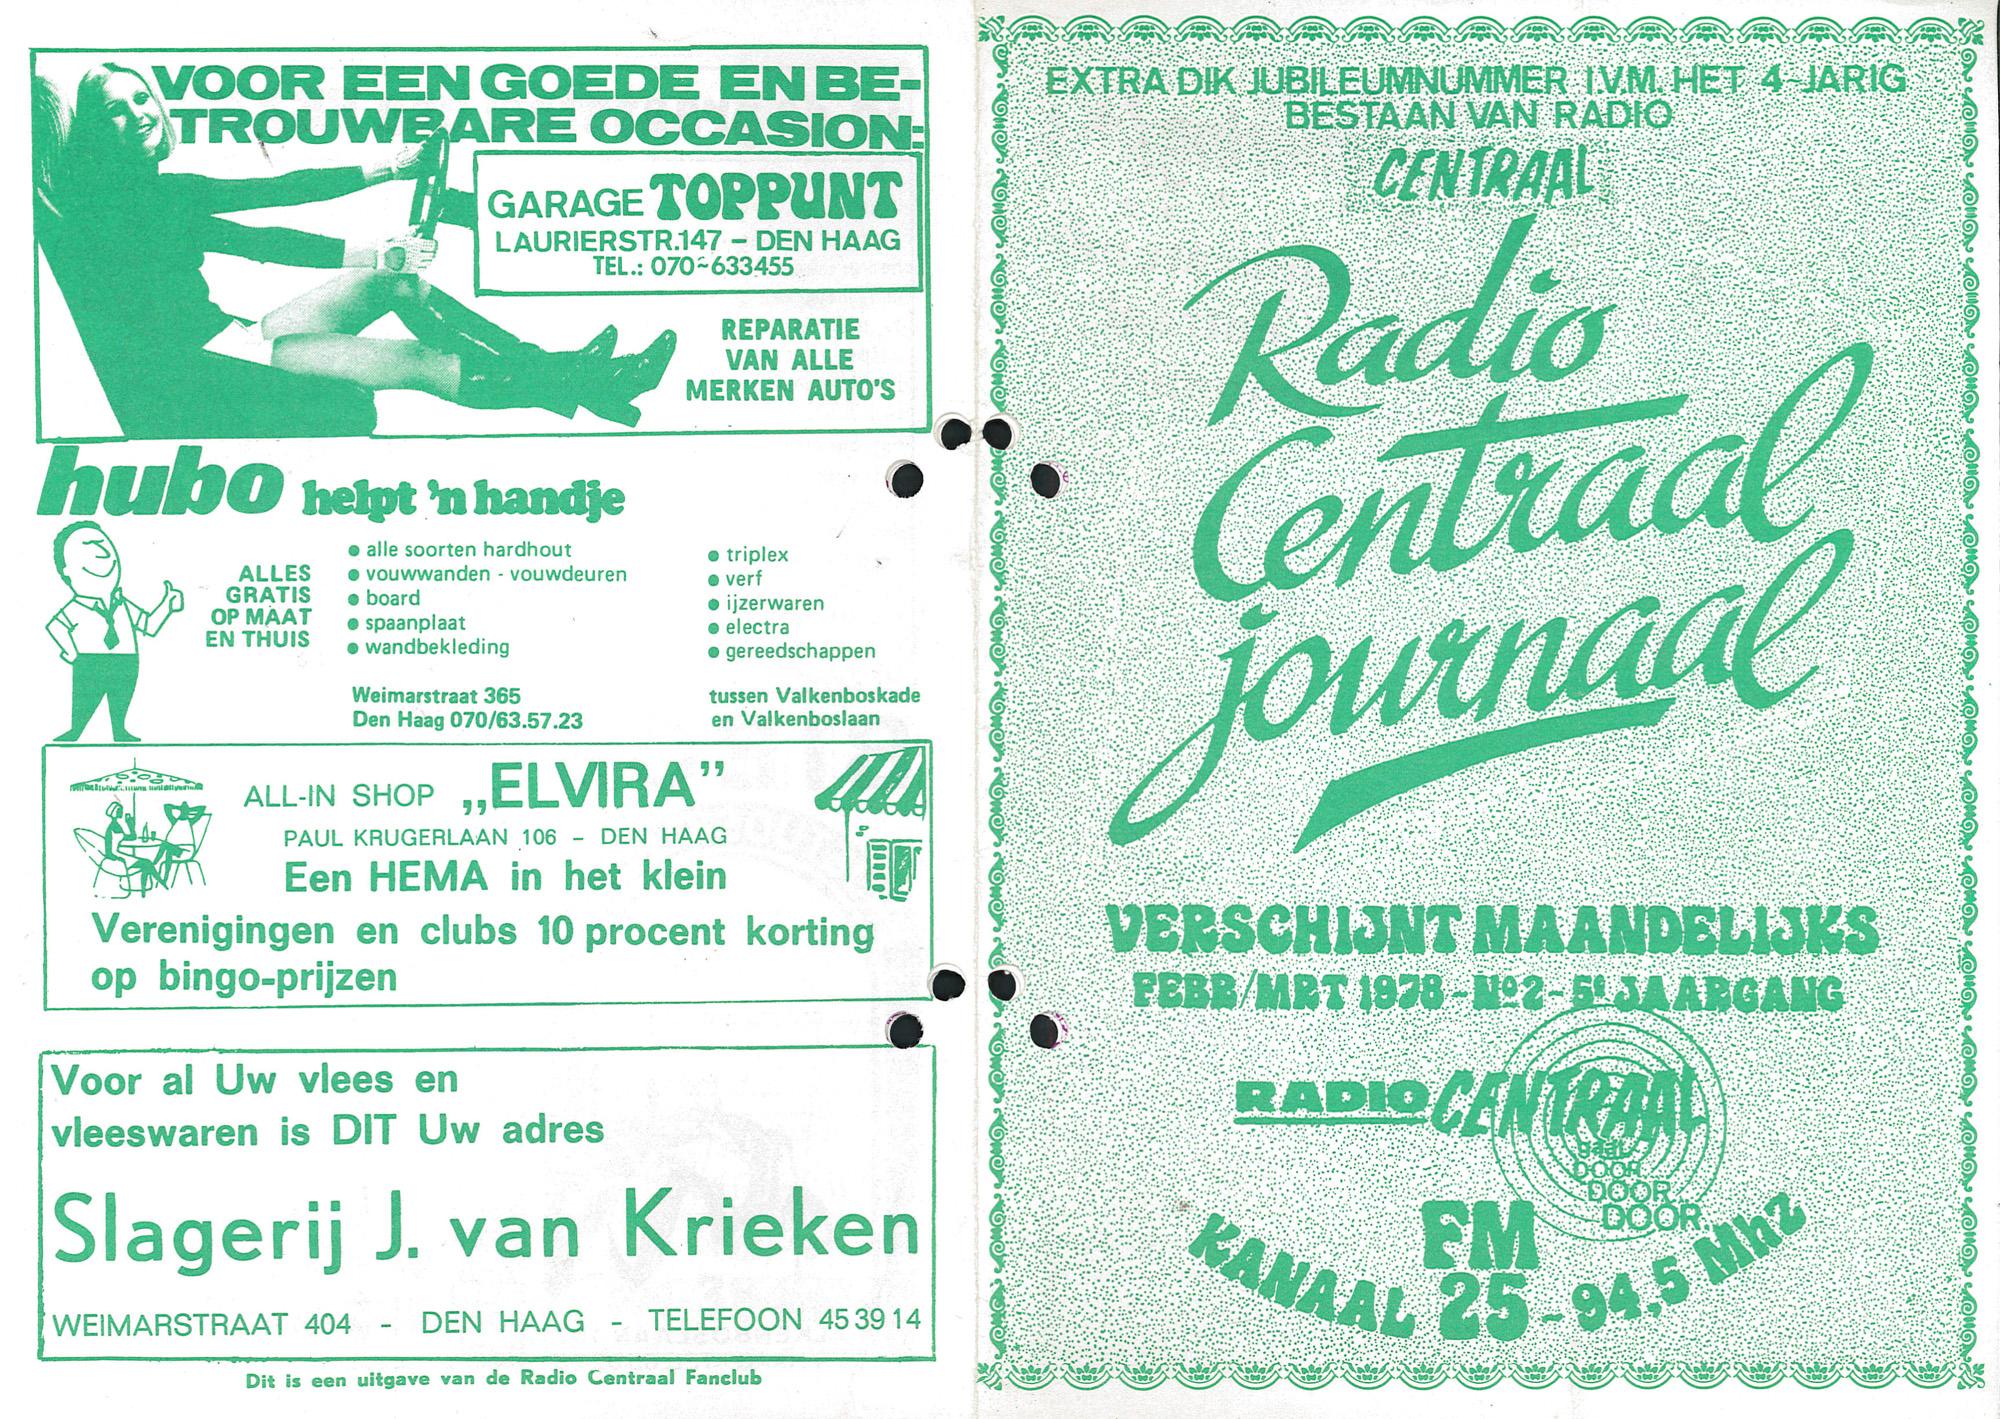 Radio Centraal Journaal - 19780200